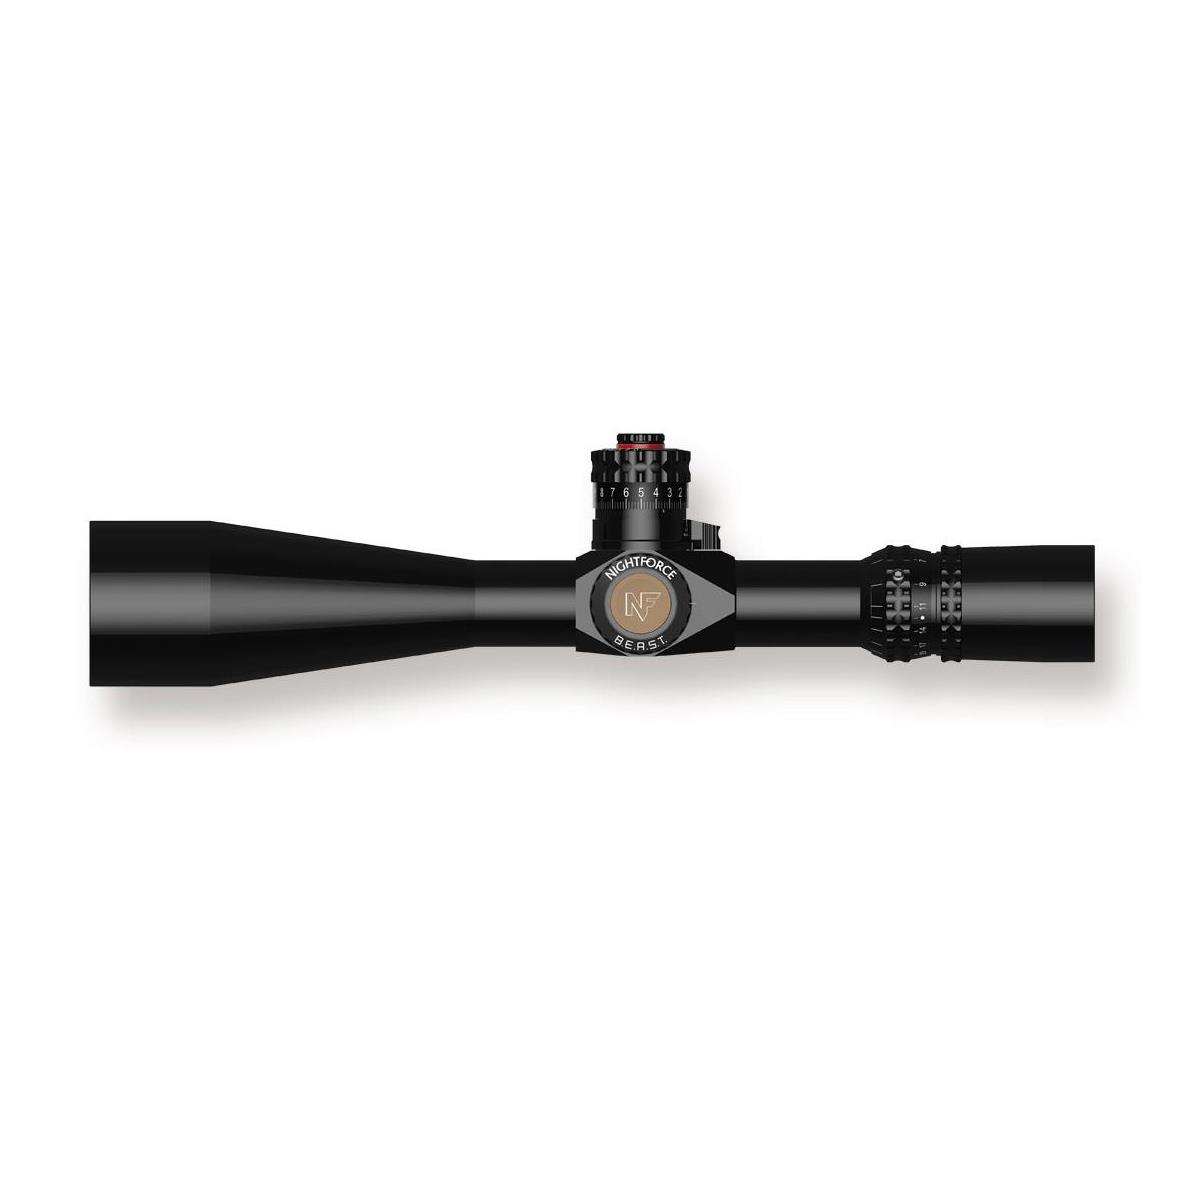 Image of Nightforce Optics 5-25x56mm BEAST Riflescope